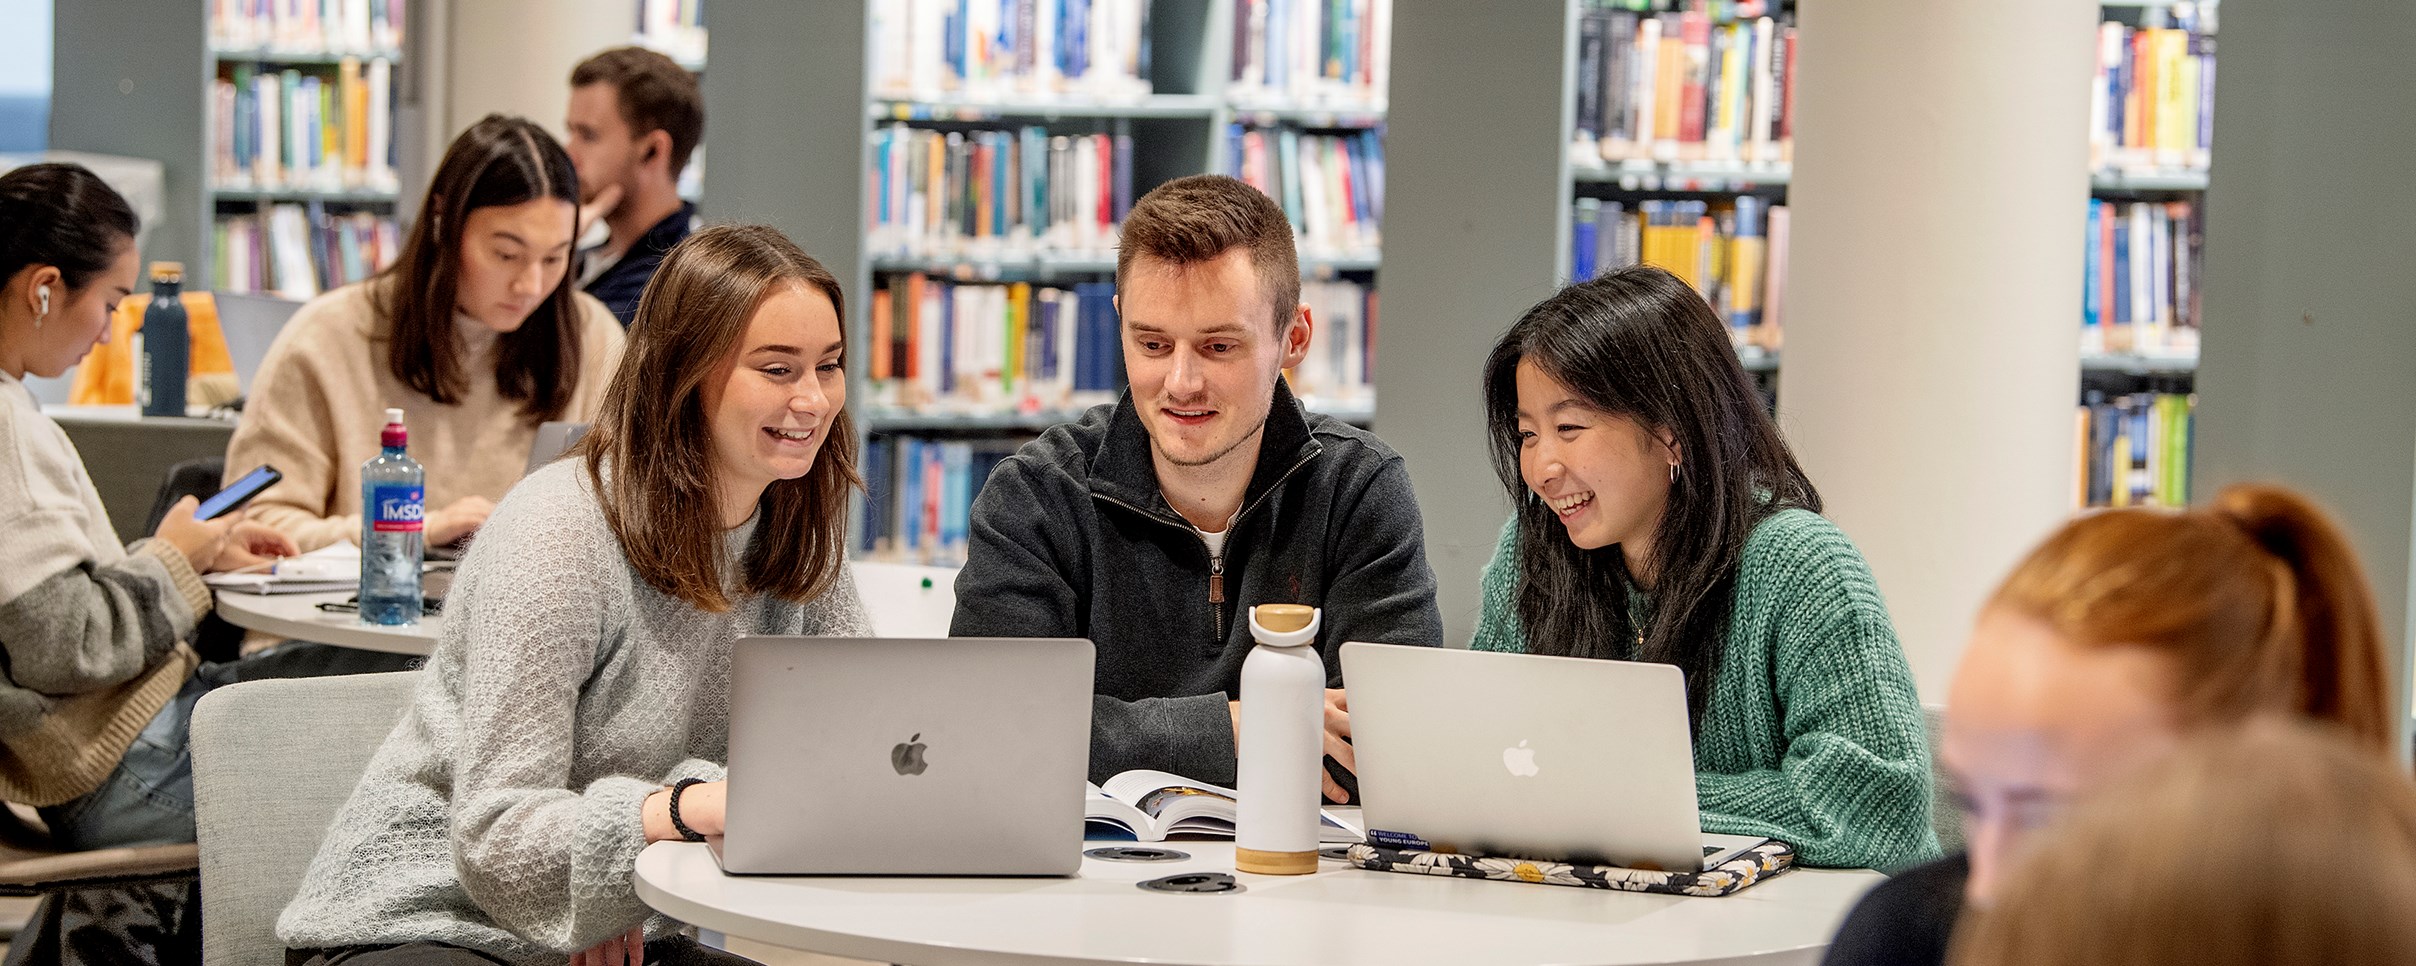 Bilde av tre NHH-studenter som er på biblioteket og ser på PC-skjermer, mens de ler.Foto: Helge Skodvin